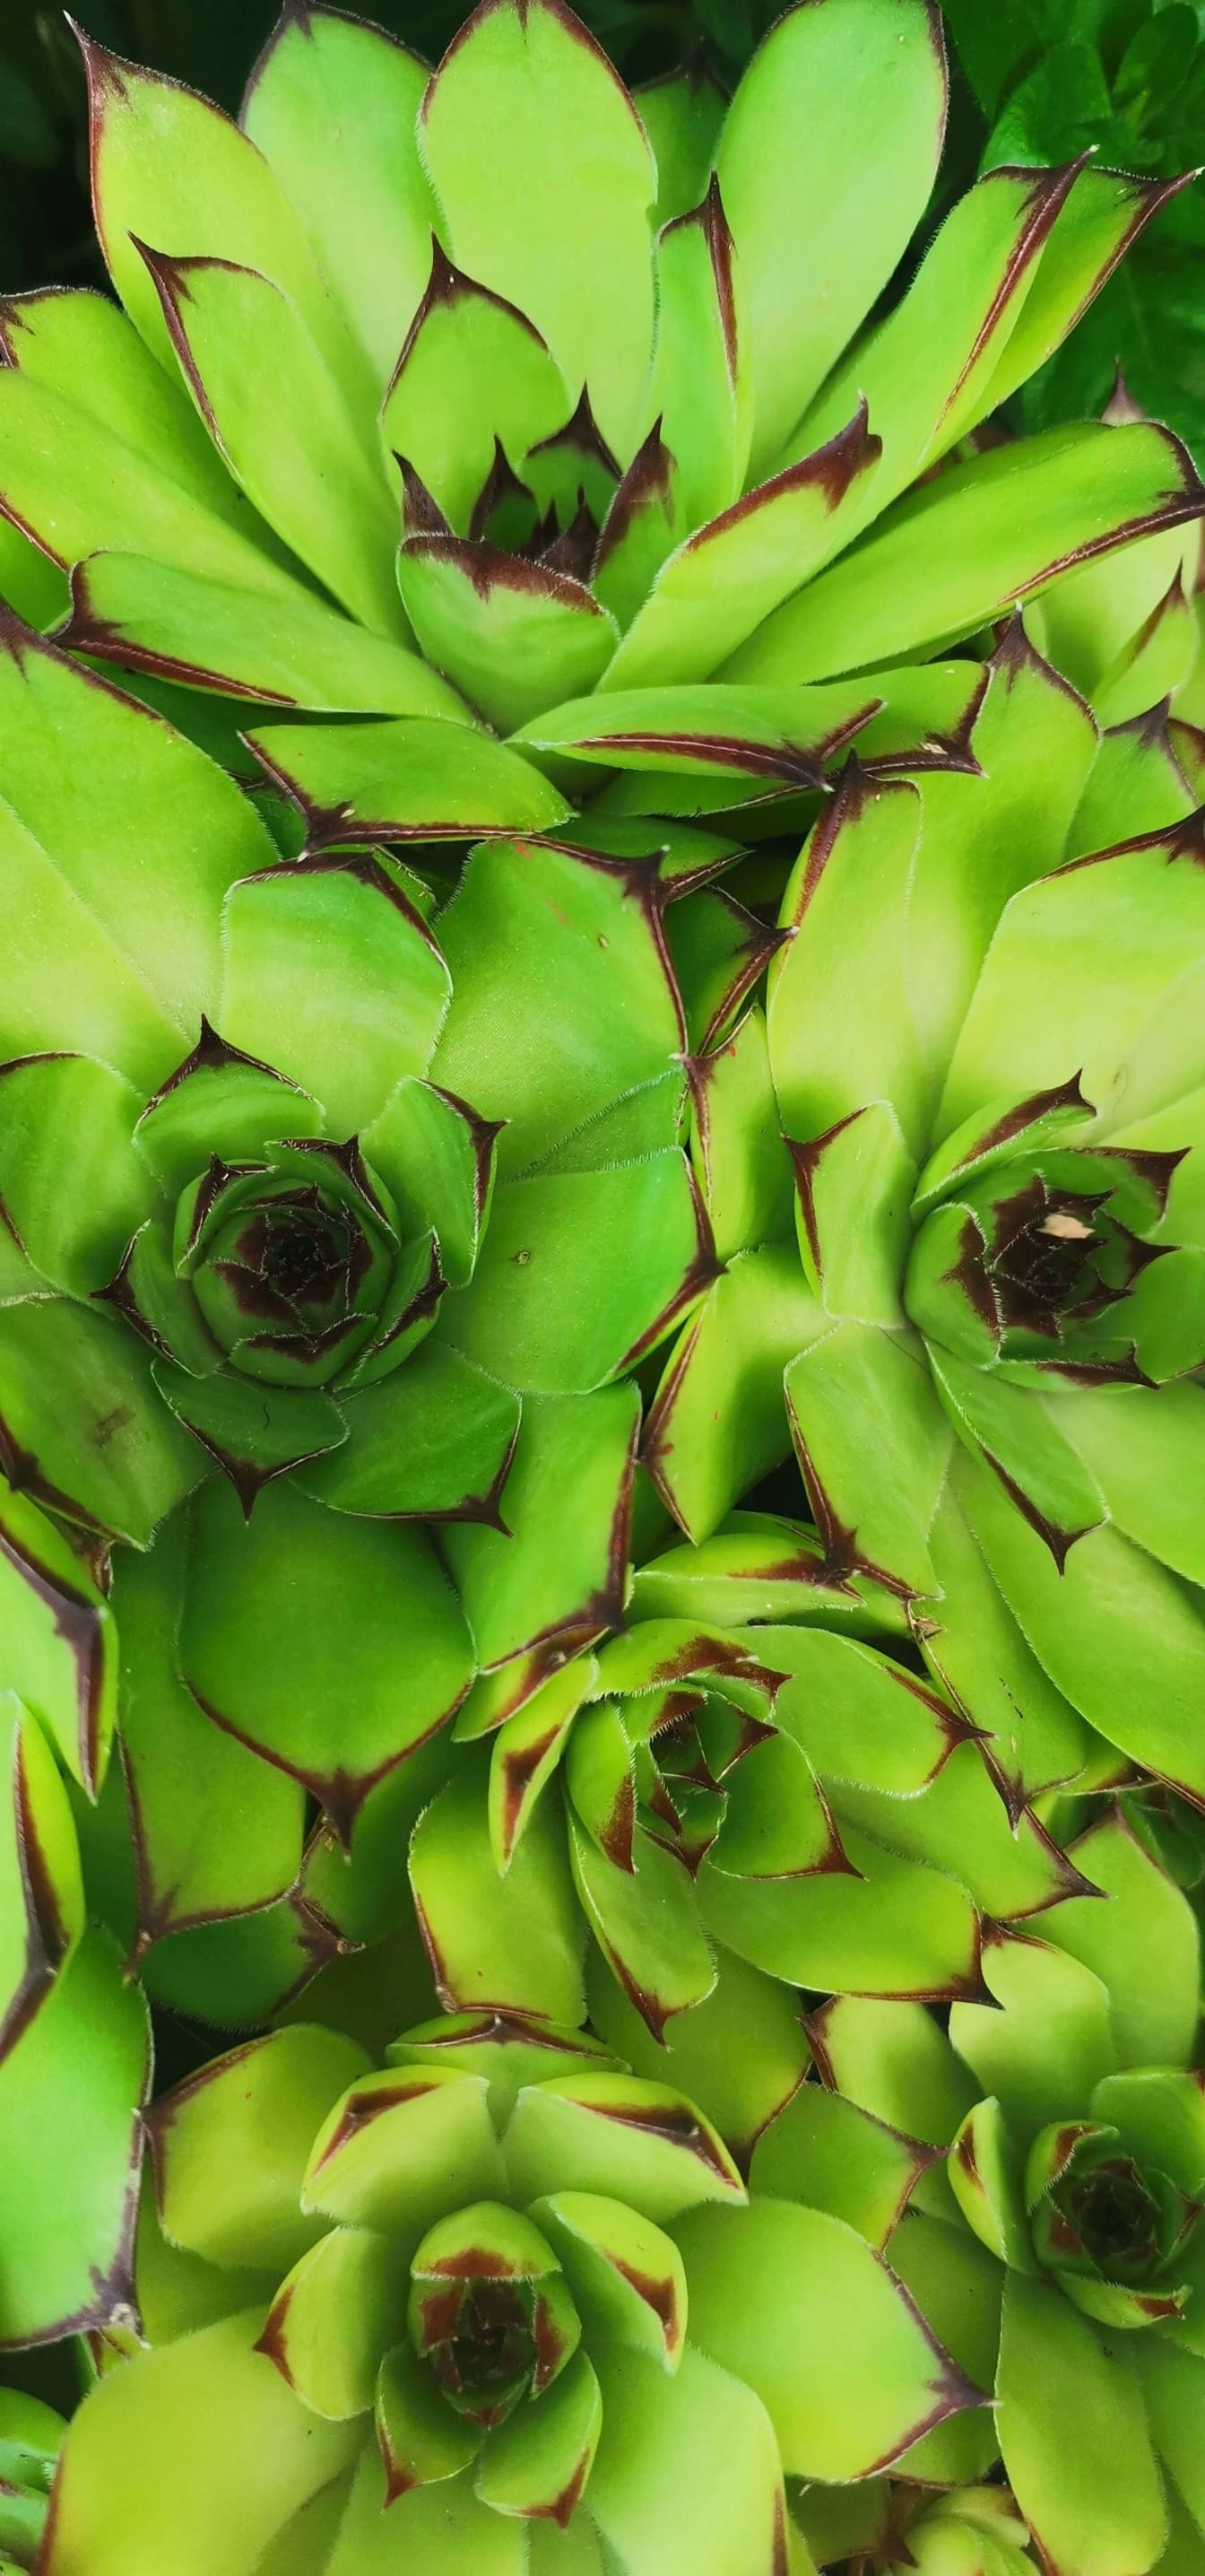 Greenich gula blad av husets purjolök (Sempervivum tectorum) ört närbild